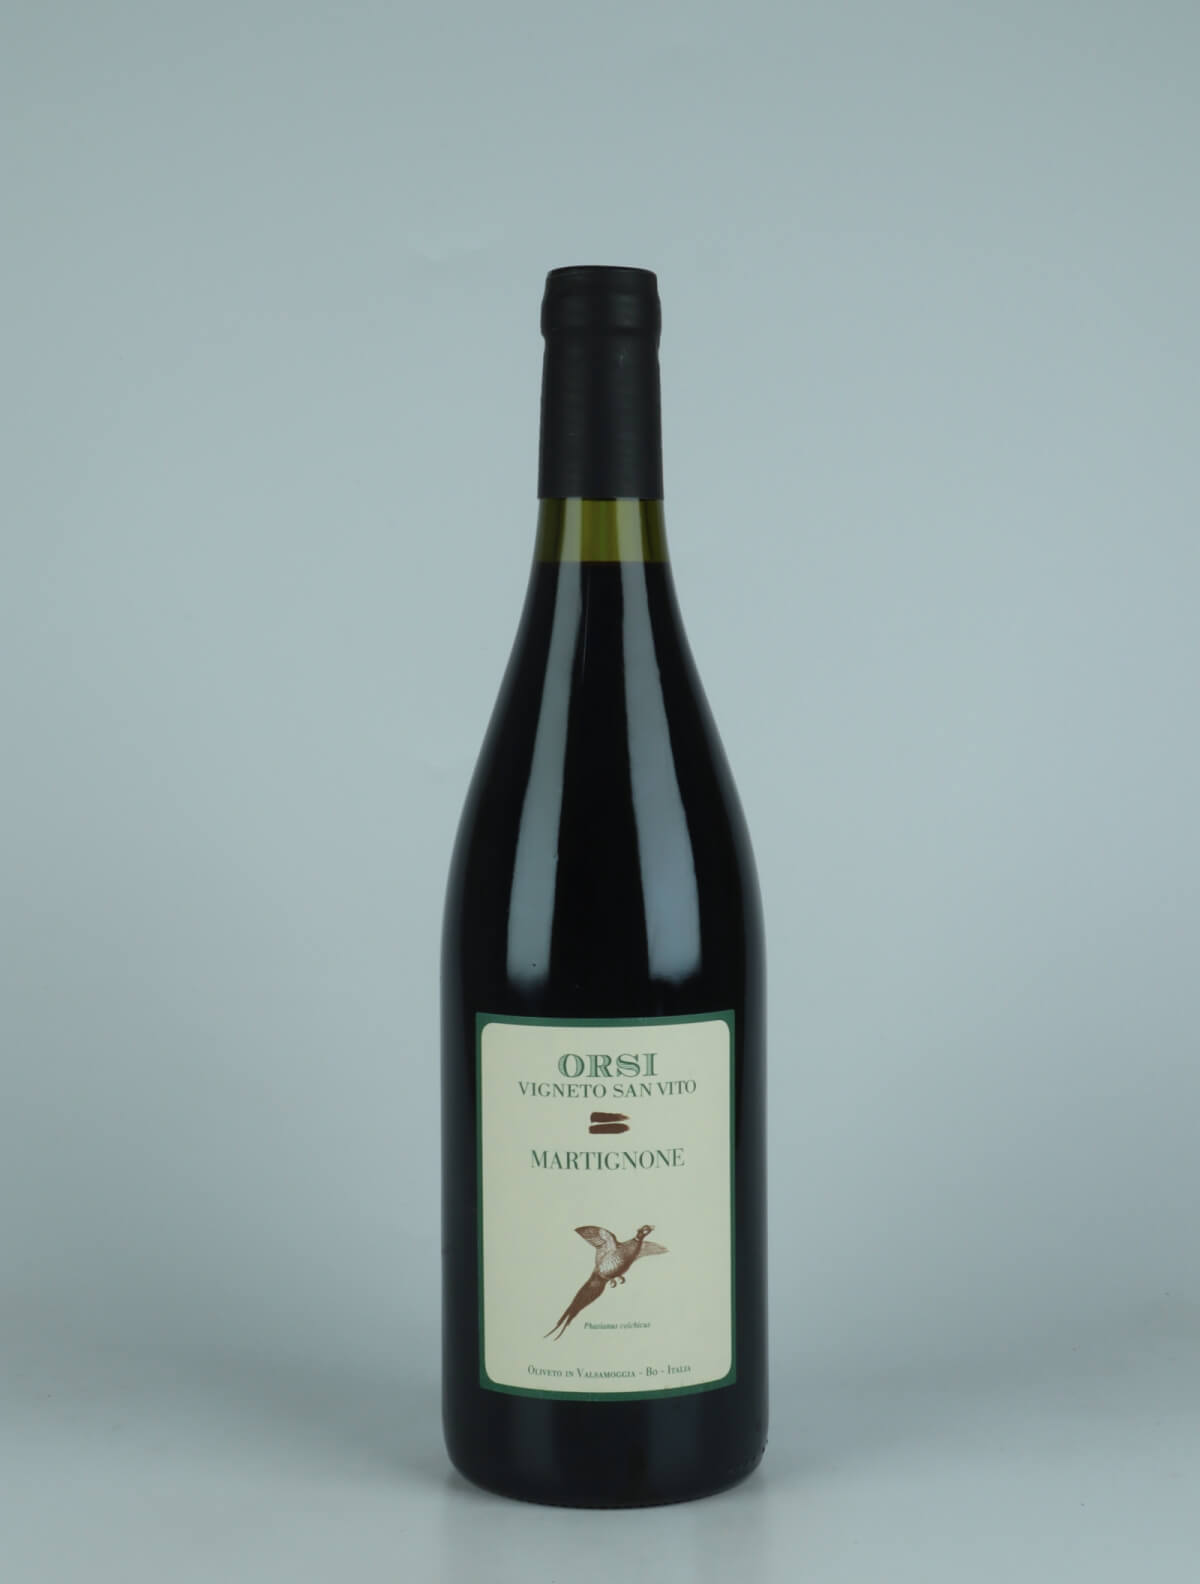 A bottle 2021 Martignone Red wine from Orsi - San Vito, Emilia-Romagna in Italy